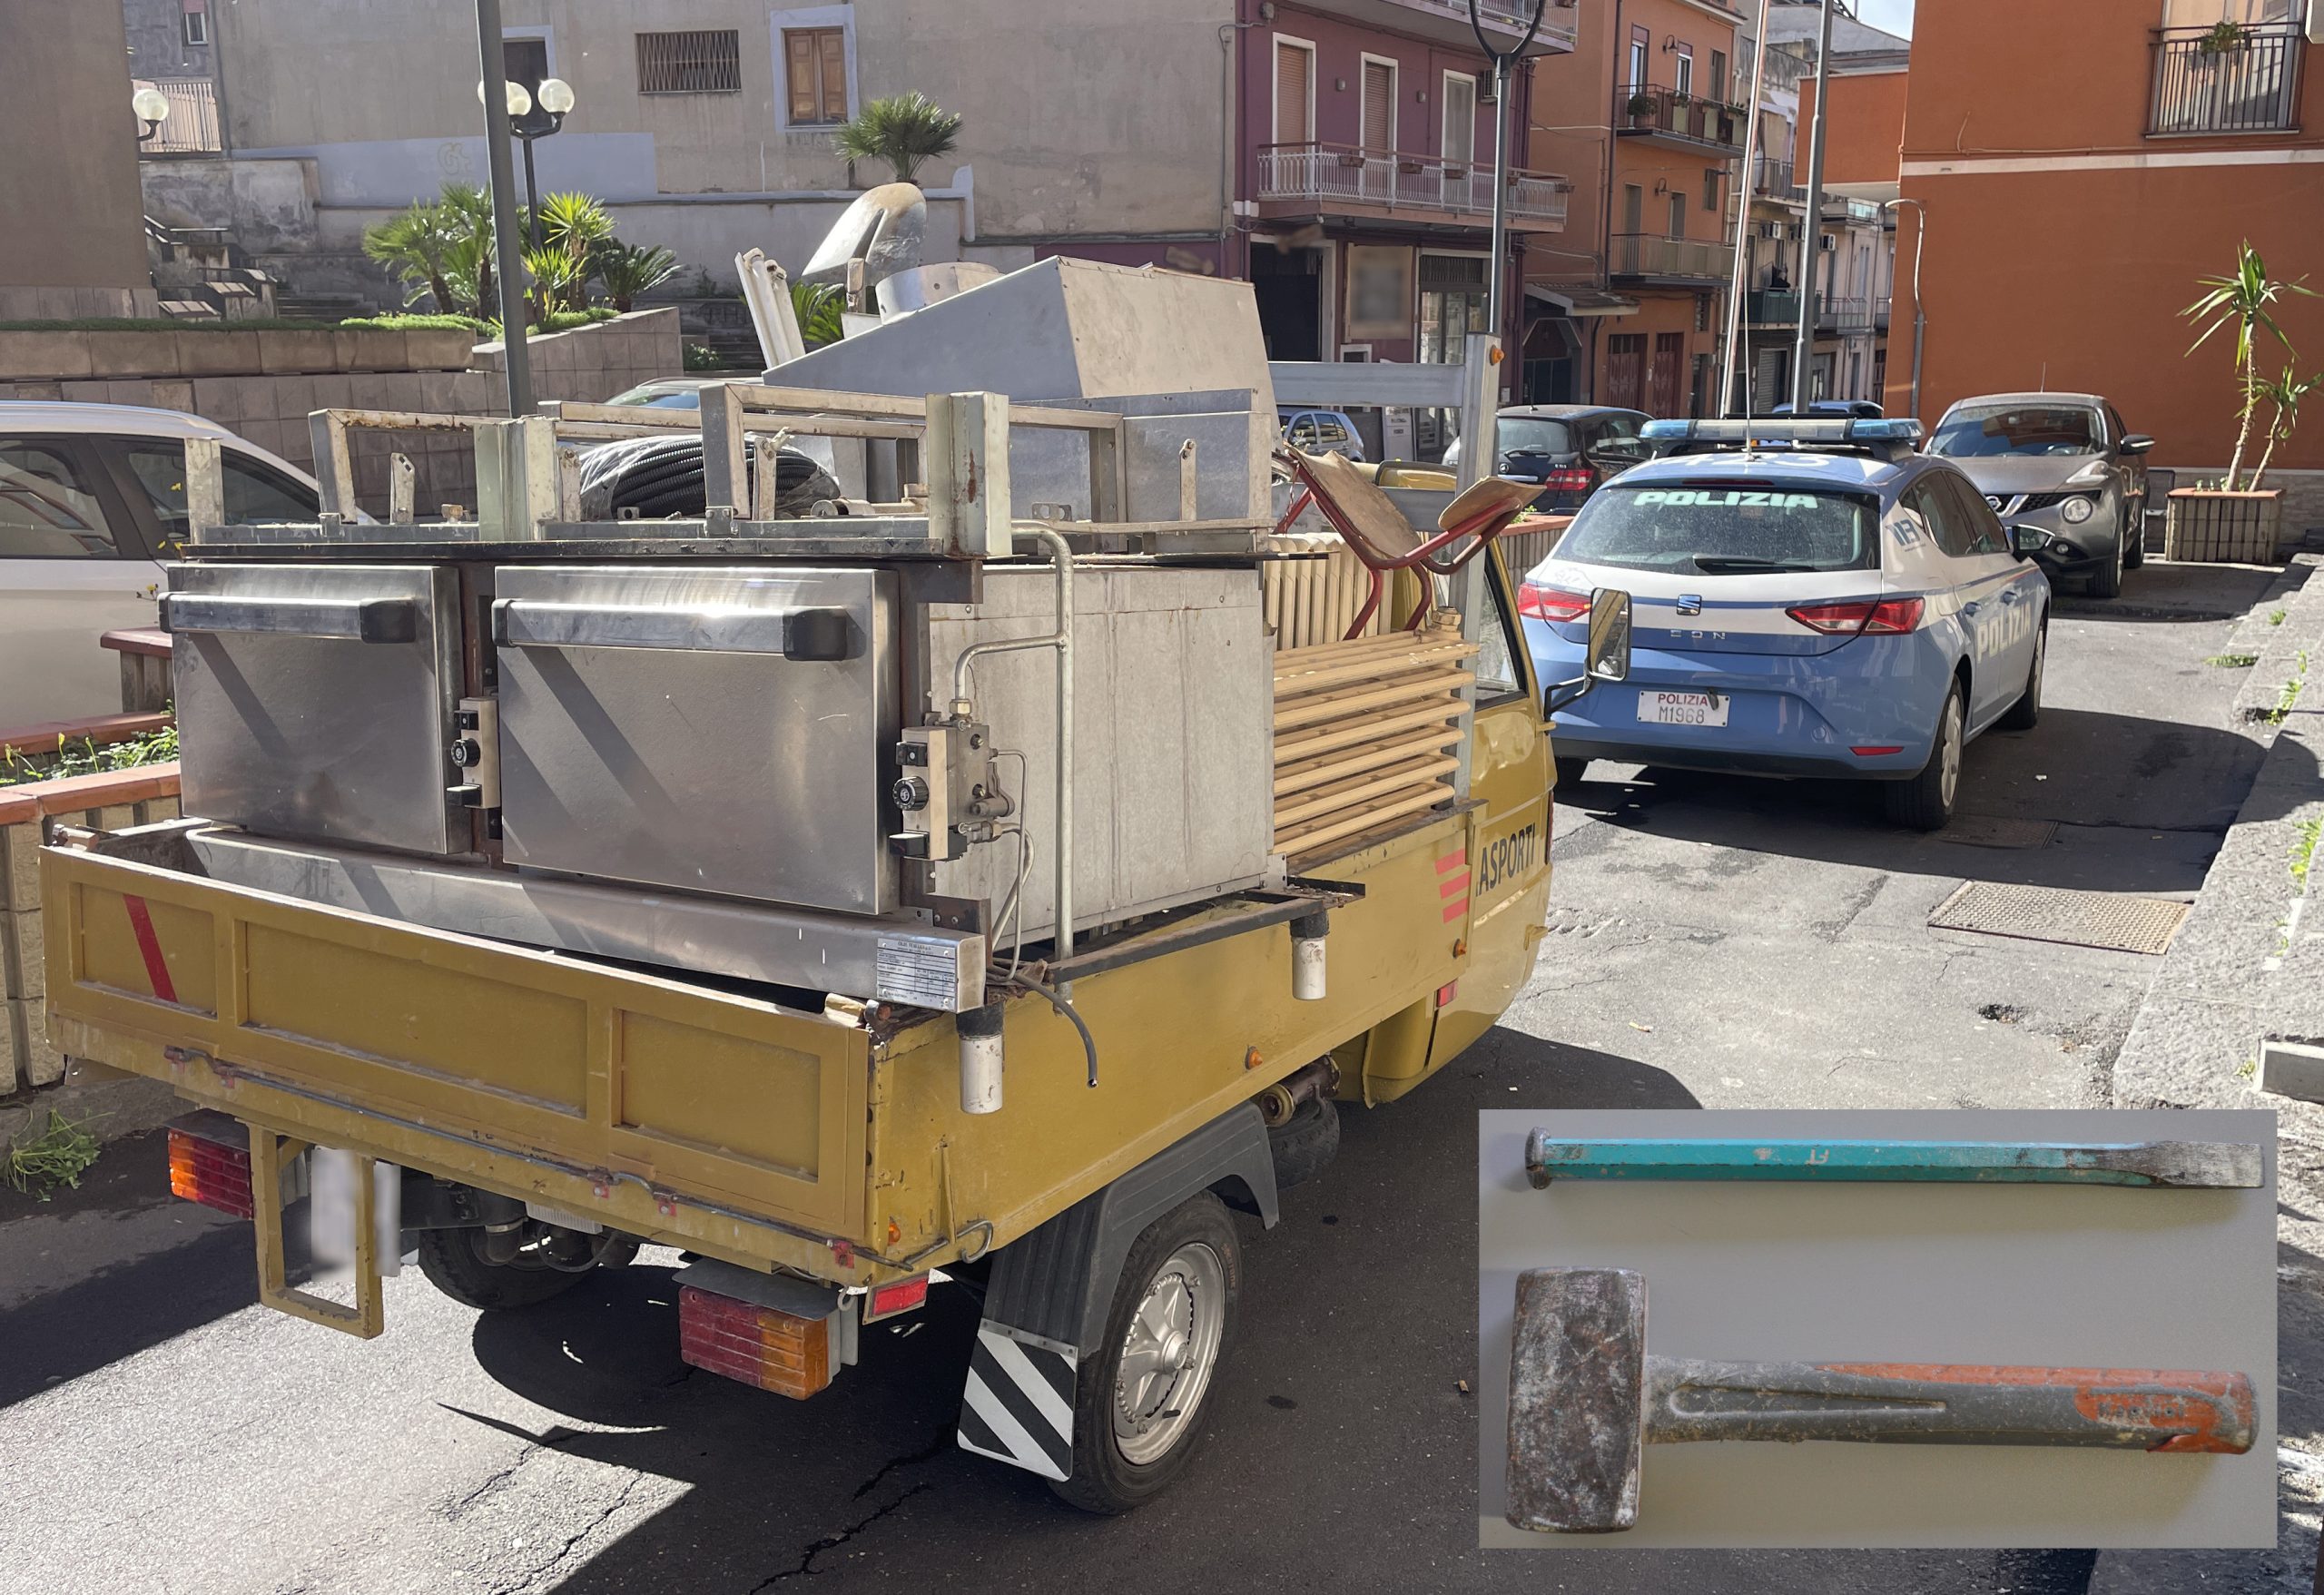 Termosifoni, cucine e climatizzatori rubati a bordo di una motoape: 2 arresti ad Adrano